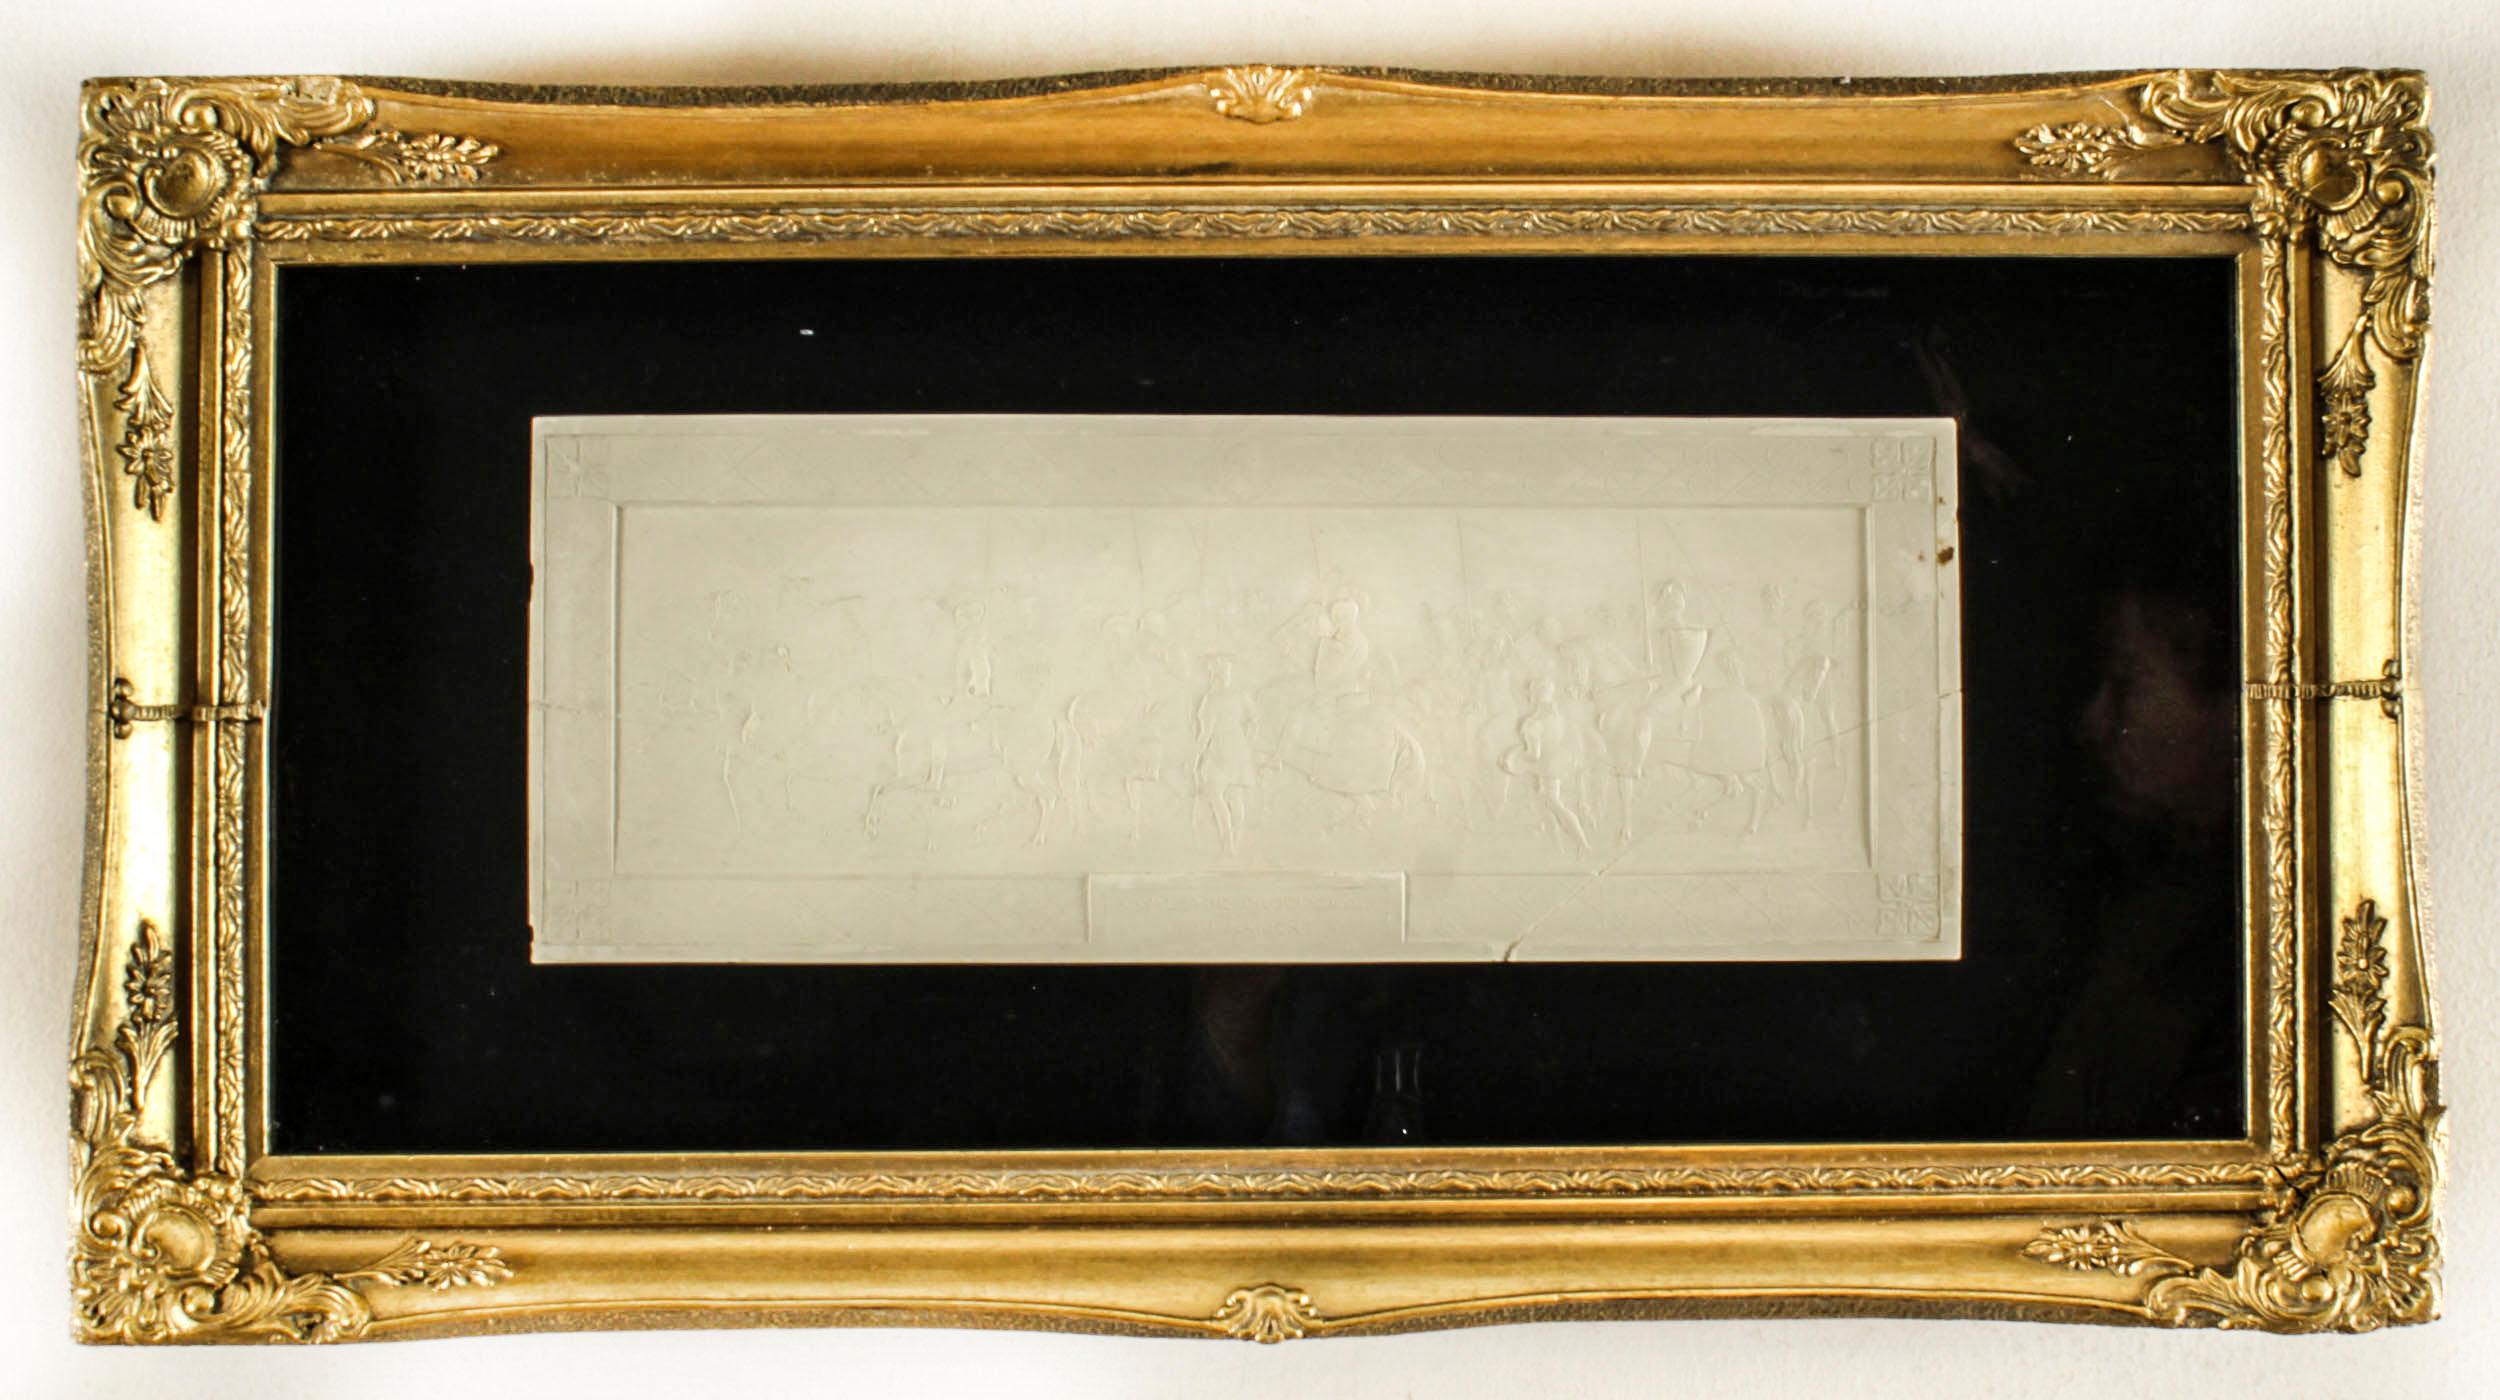 Un élégant ensemble de trois cadres en bois doré renfermant 12 intailles en plâtre Grand Tour Giovanni Liberotti de taille inhabituelle, datant du début du XIXe siècle.
 
Les diverses grandes intailles en plâtre de forme rectangulaire présentent des